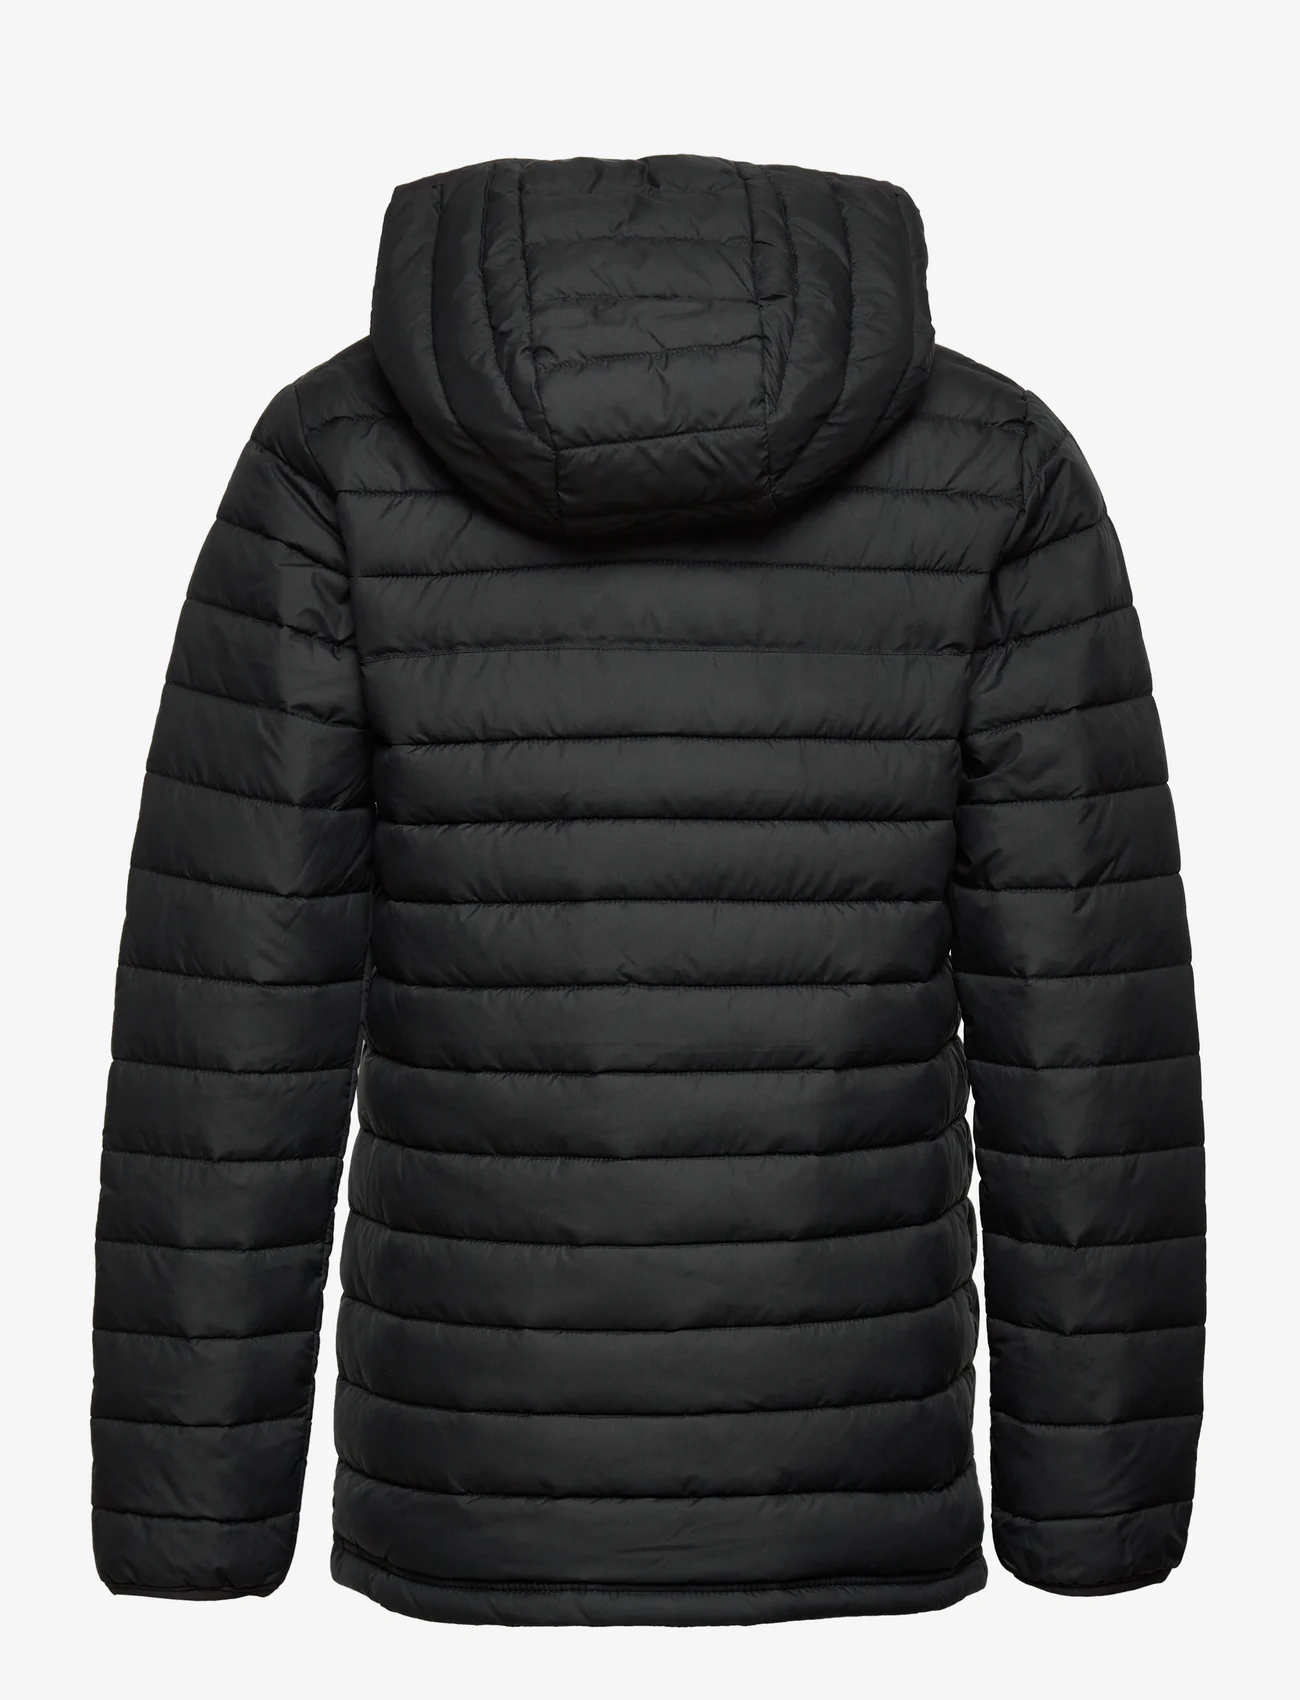 Columbia Sportswear - Powder Lite Boys Hooded Jacket - isolerede jakker - black - 1